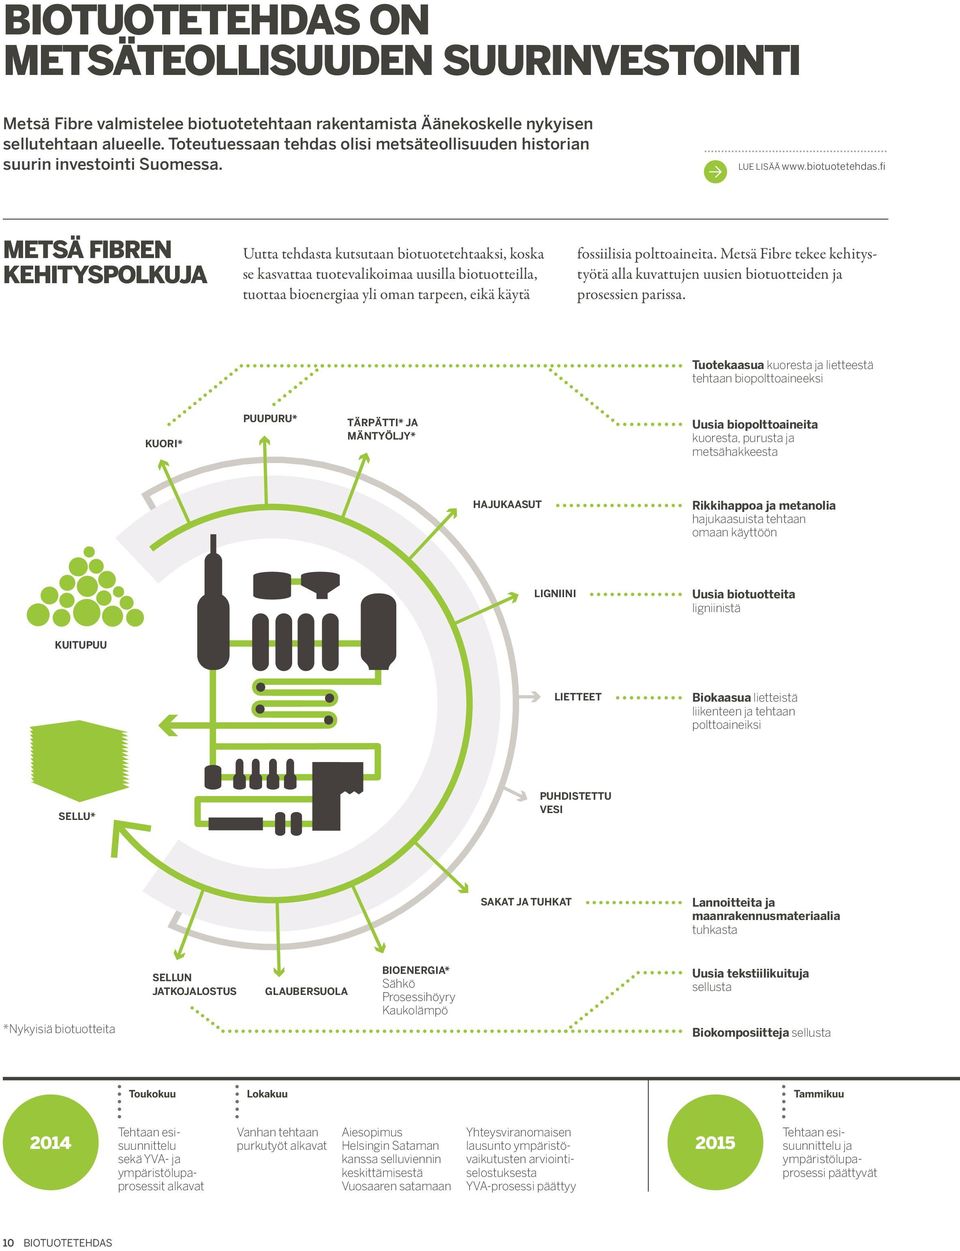 fi Metsä Fibren kehityspolkuja Uutta tehdasta kutsutaan biotuotetehtaaksi, koska se kasvattaa tuotevalikoimaa uusilla biotuotteilla, tuottaa bioenergiaa yli oman tarpeen, eikä käytä fossiilisia